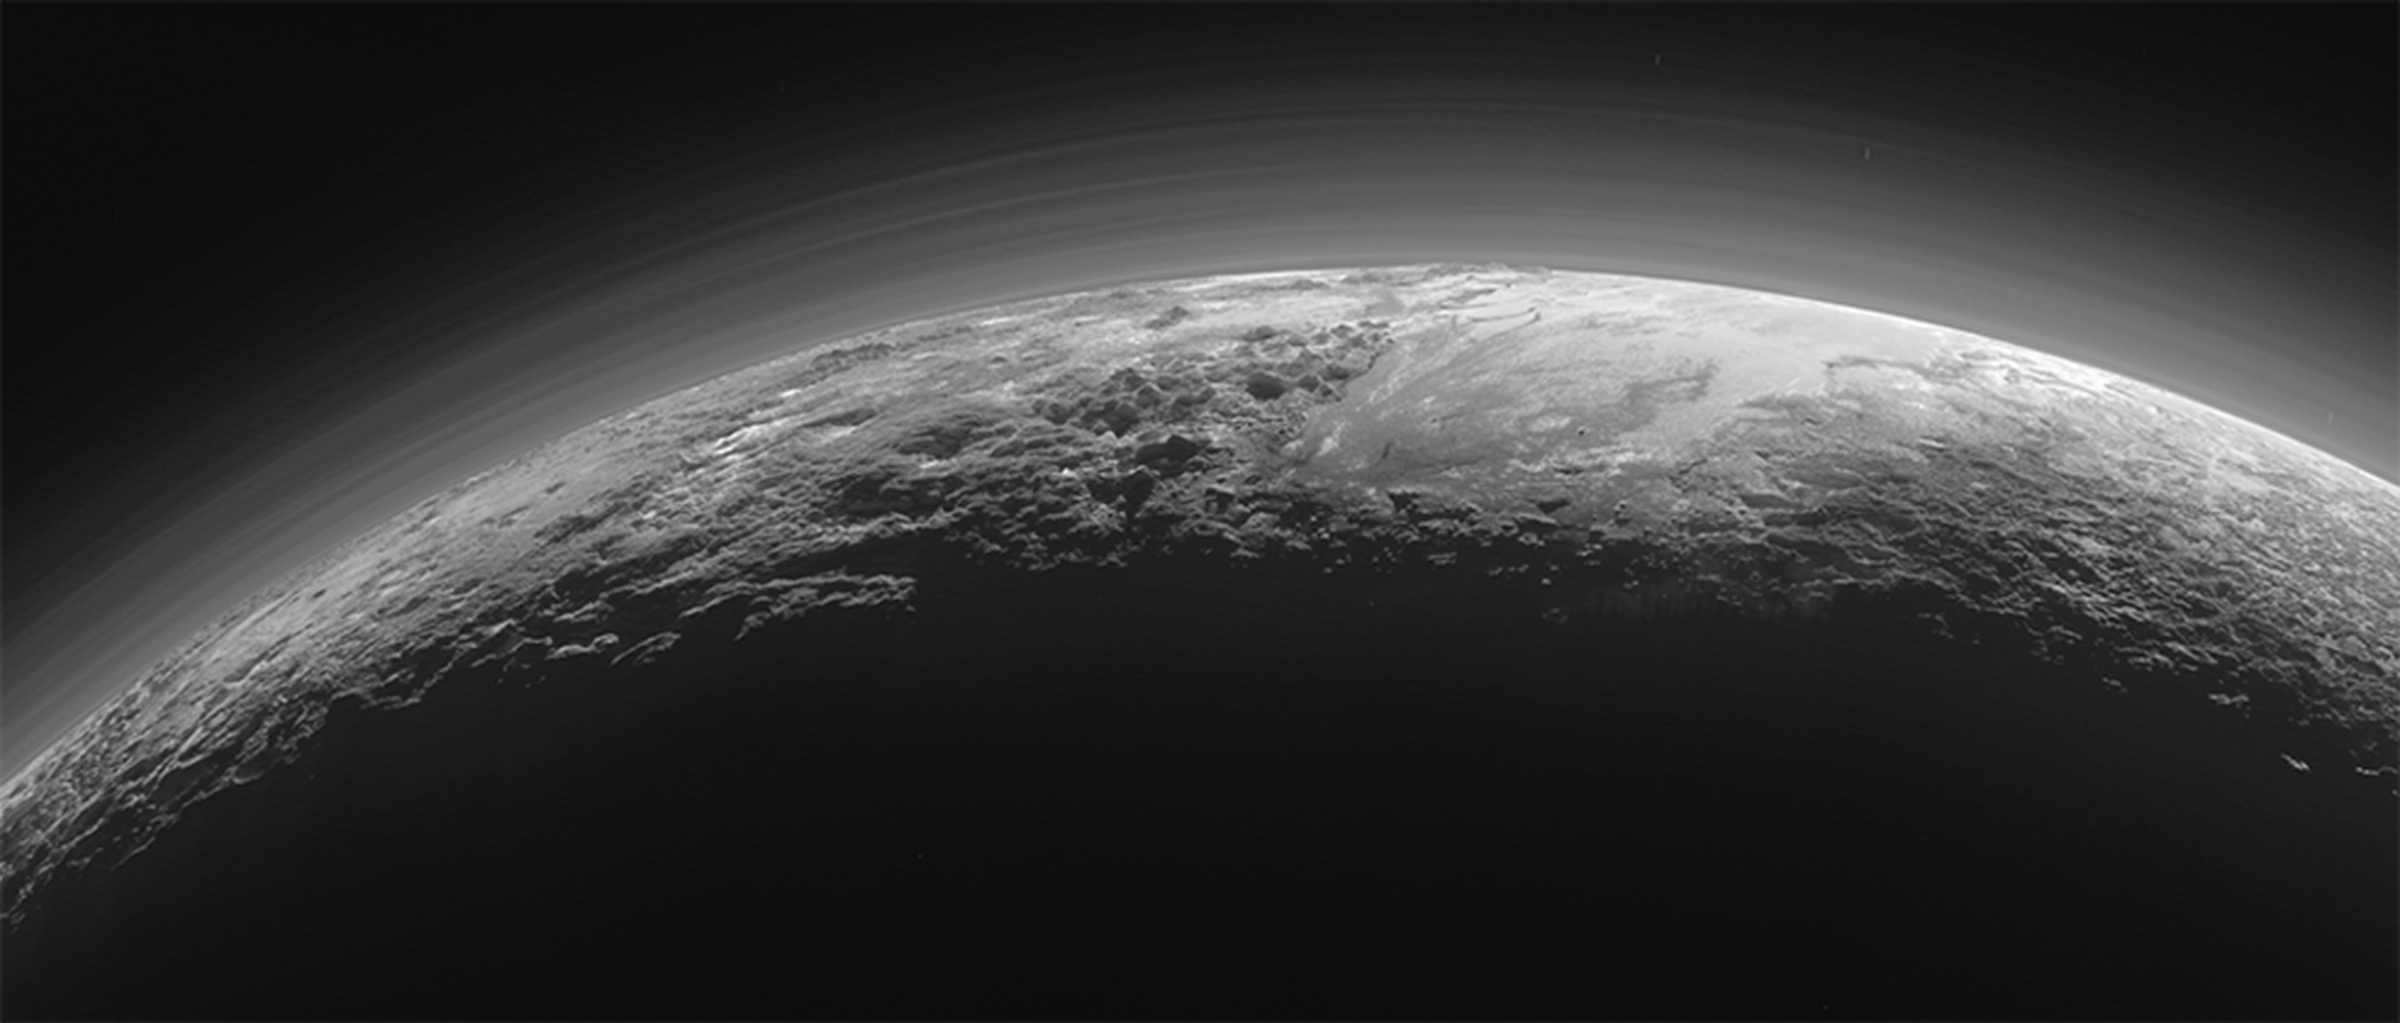 New panoramas of Pluto's surface